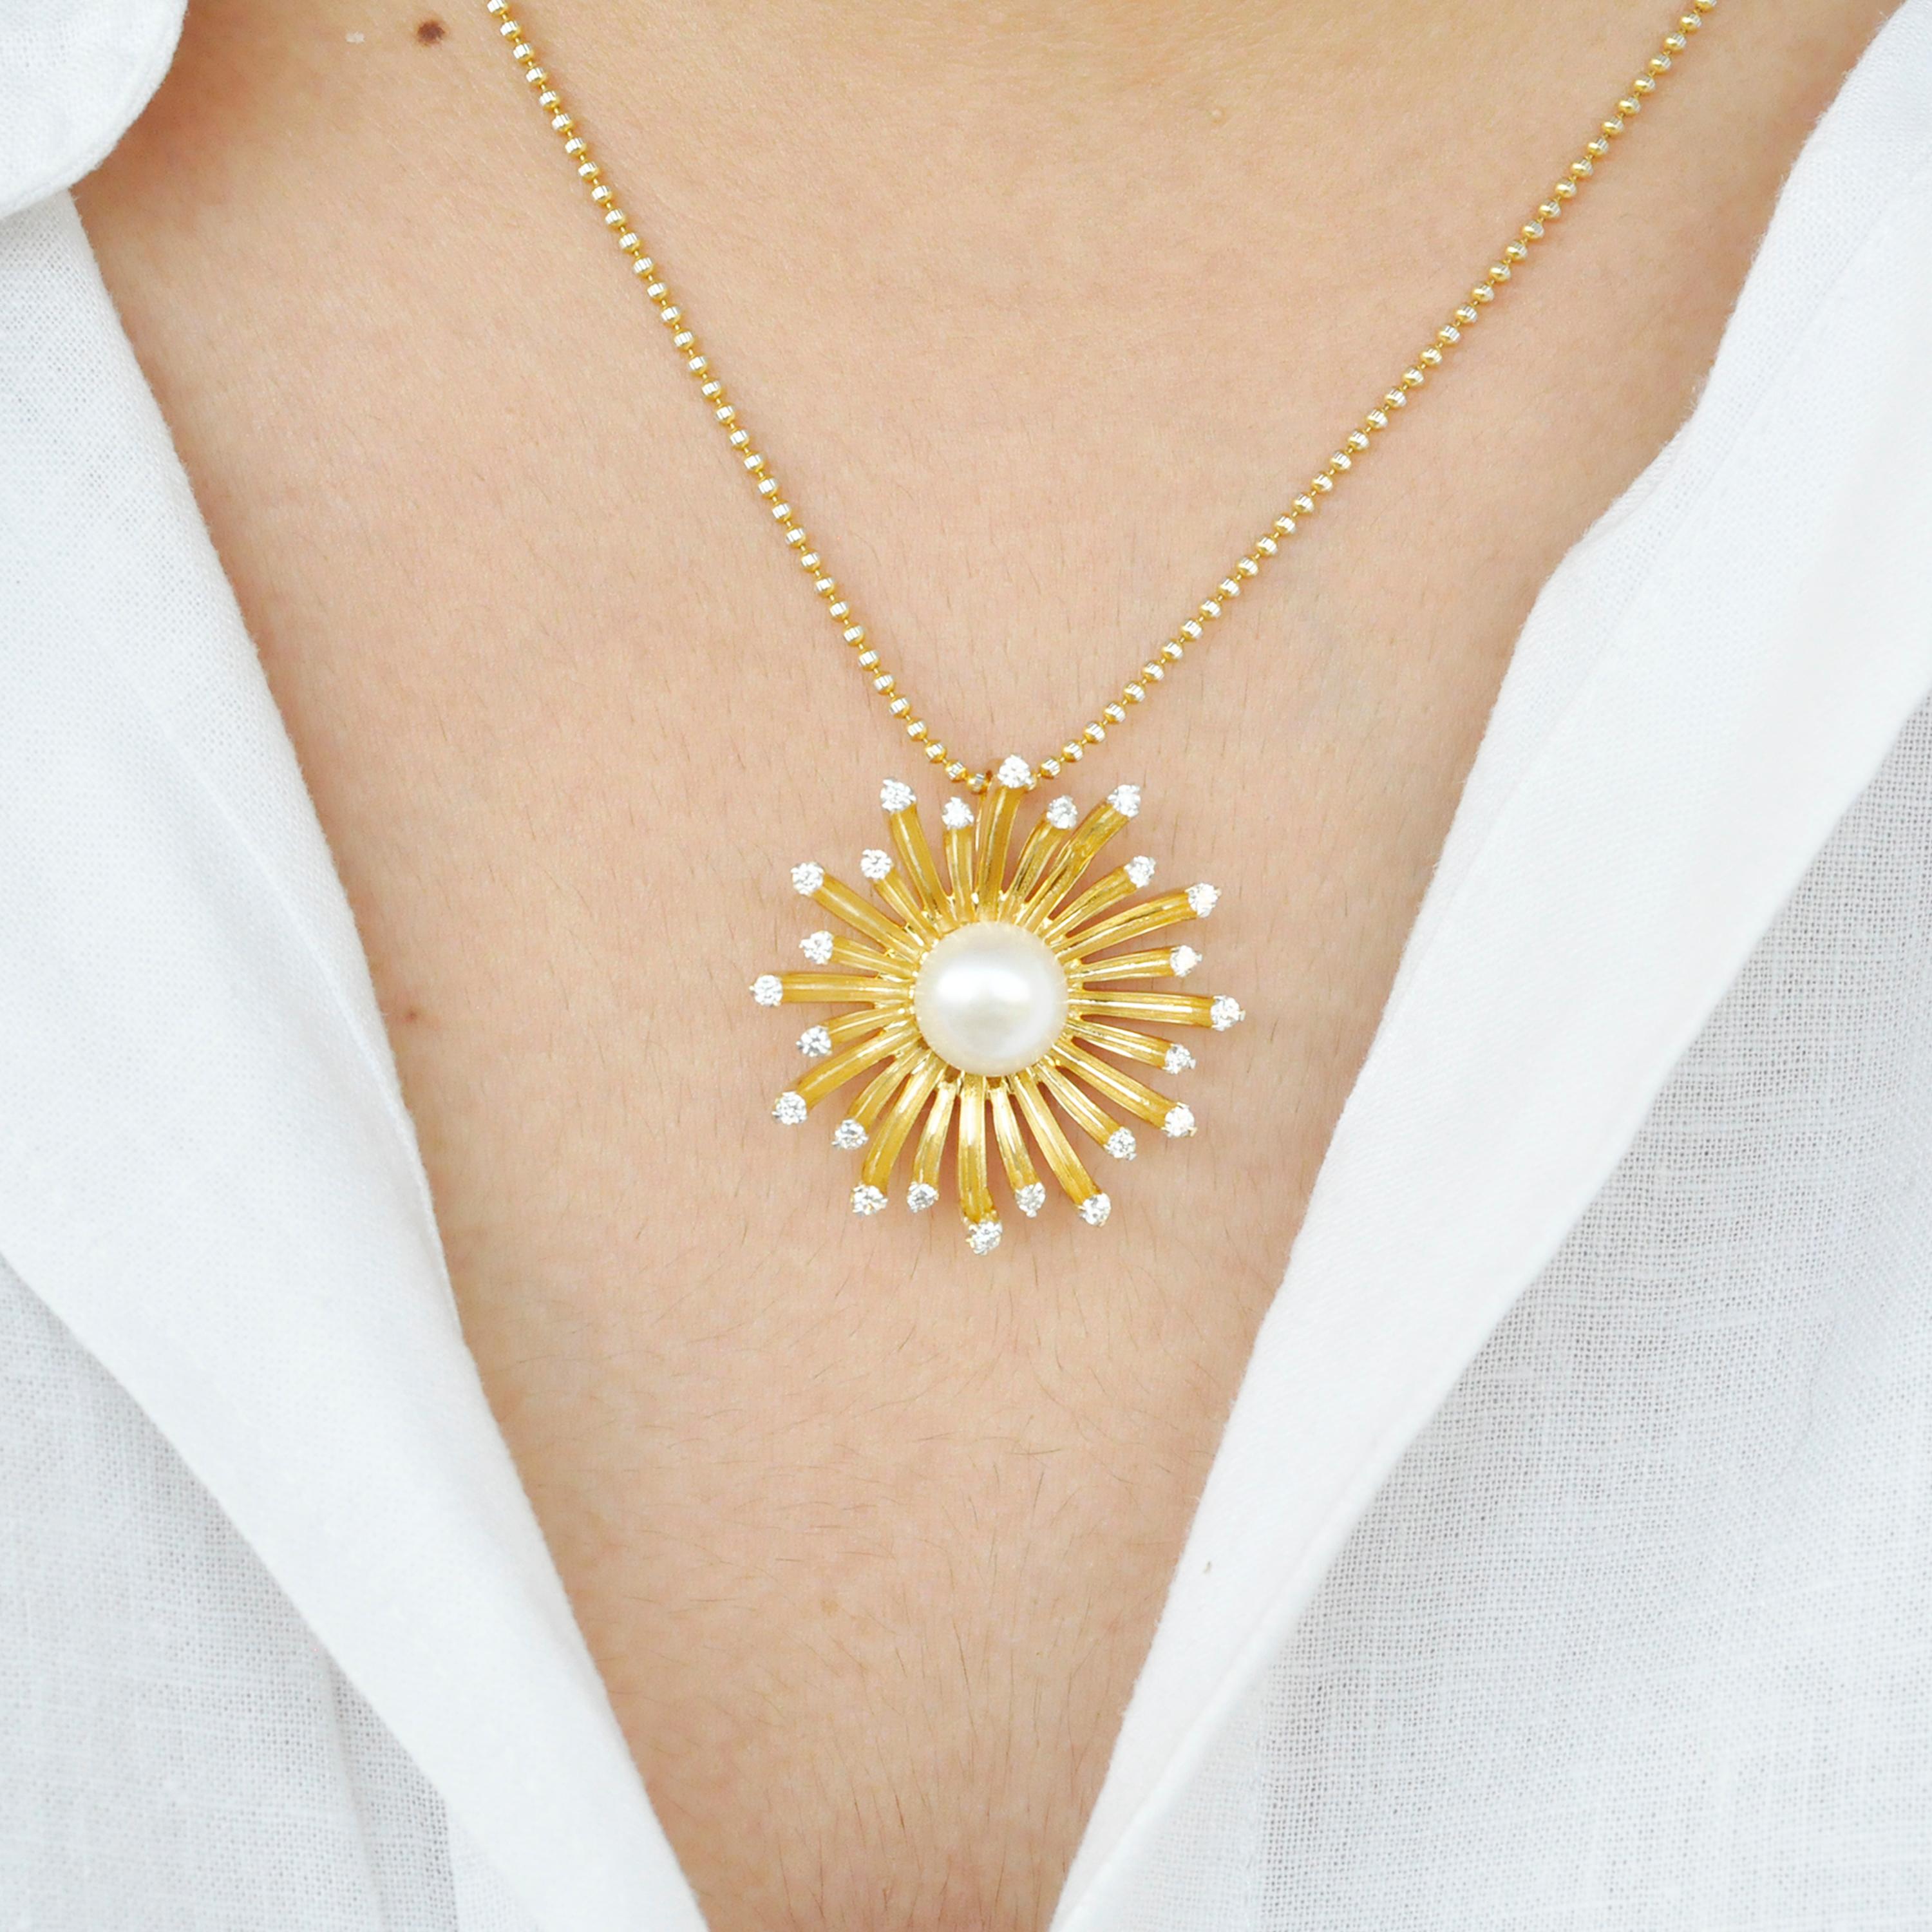 Ce collier pendentif en diamant en or 18 carats a la forme d'une fleur épanouie. L'or des pétales est texturé pour lui donner un effet naturel, tout comme les diamants sur le dessus. Une perle ronde de culture placée au centre ajoute à l'attrait